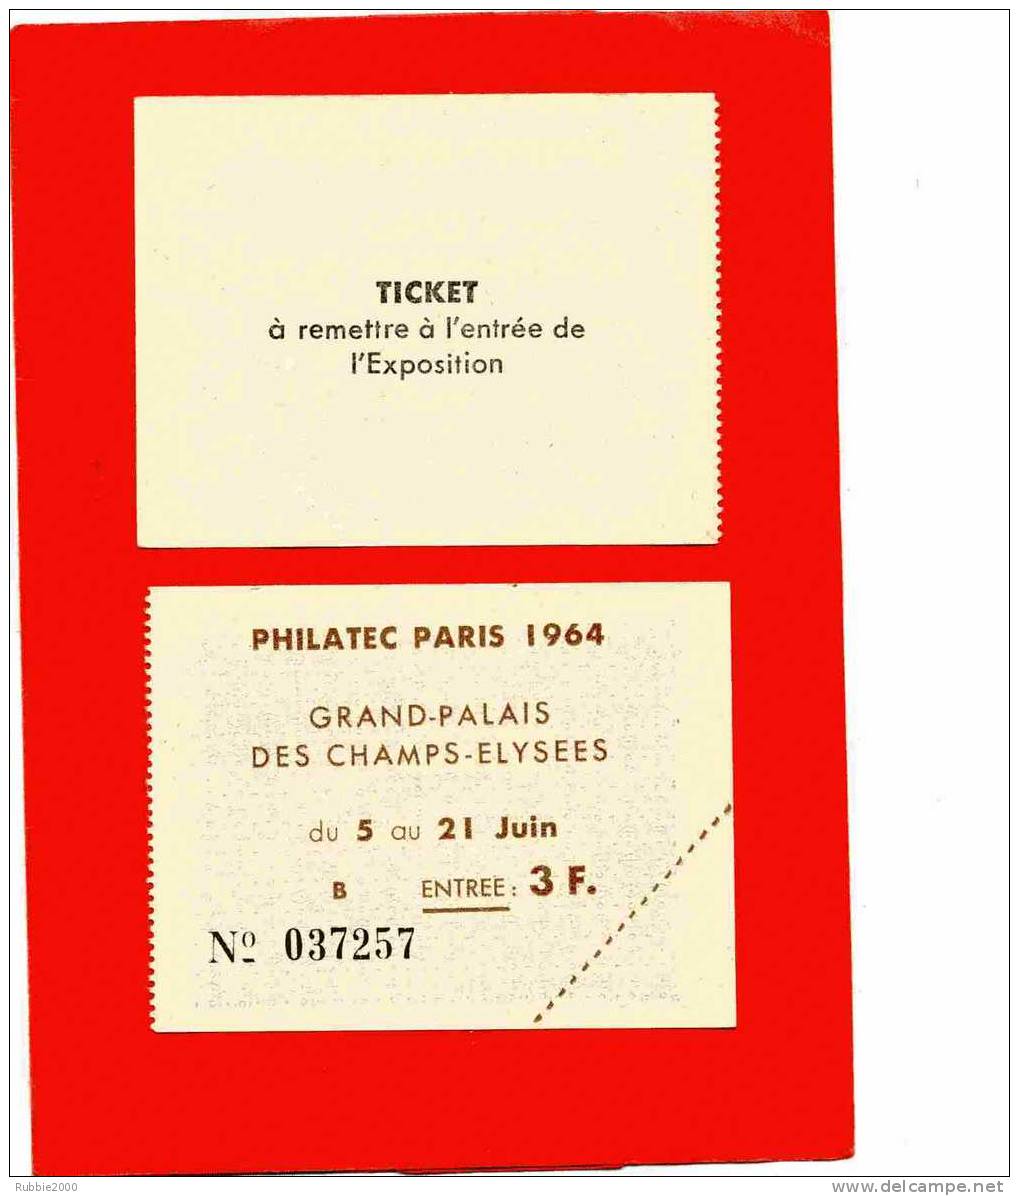 TICKET D ENTREE A PHILATEC 1964 GRAND PALAIS DES CHAMPS ELYSEES A PARIS EXPOSITION PHILATELIQUE EN TRES BON ETAT - Briefmarkenmessen